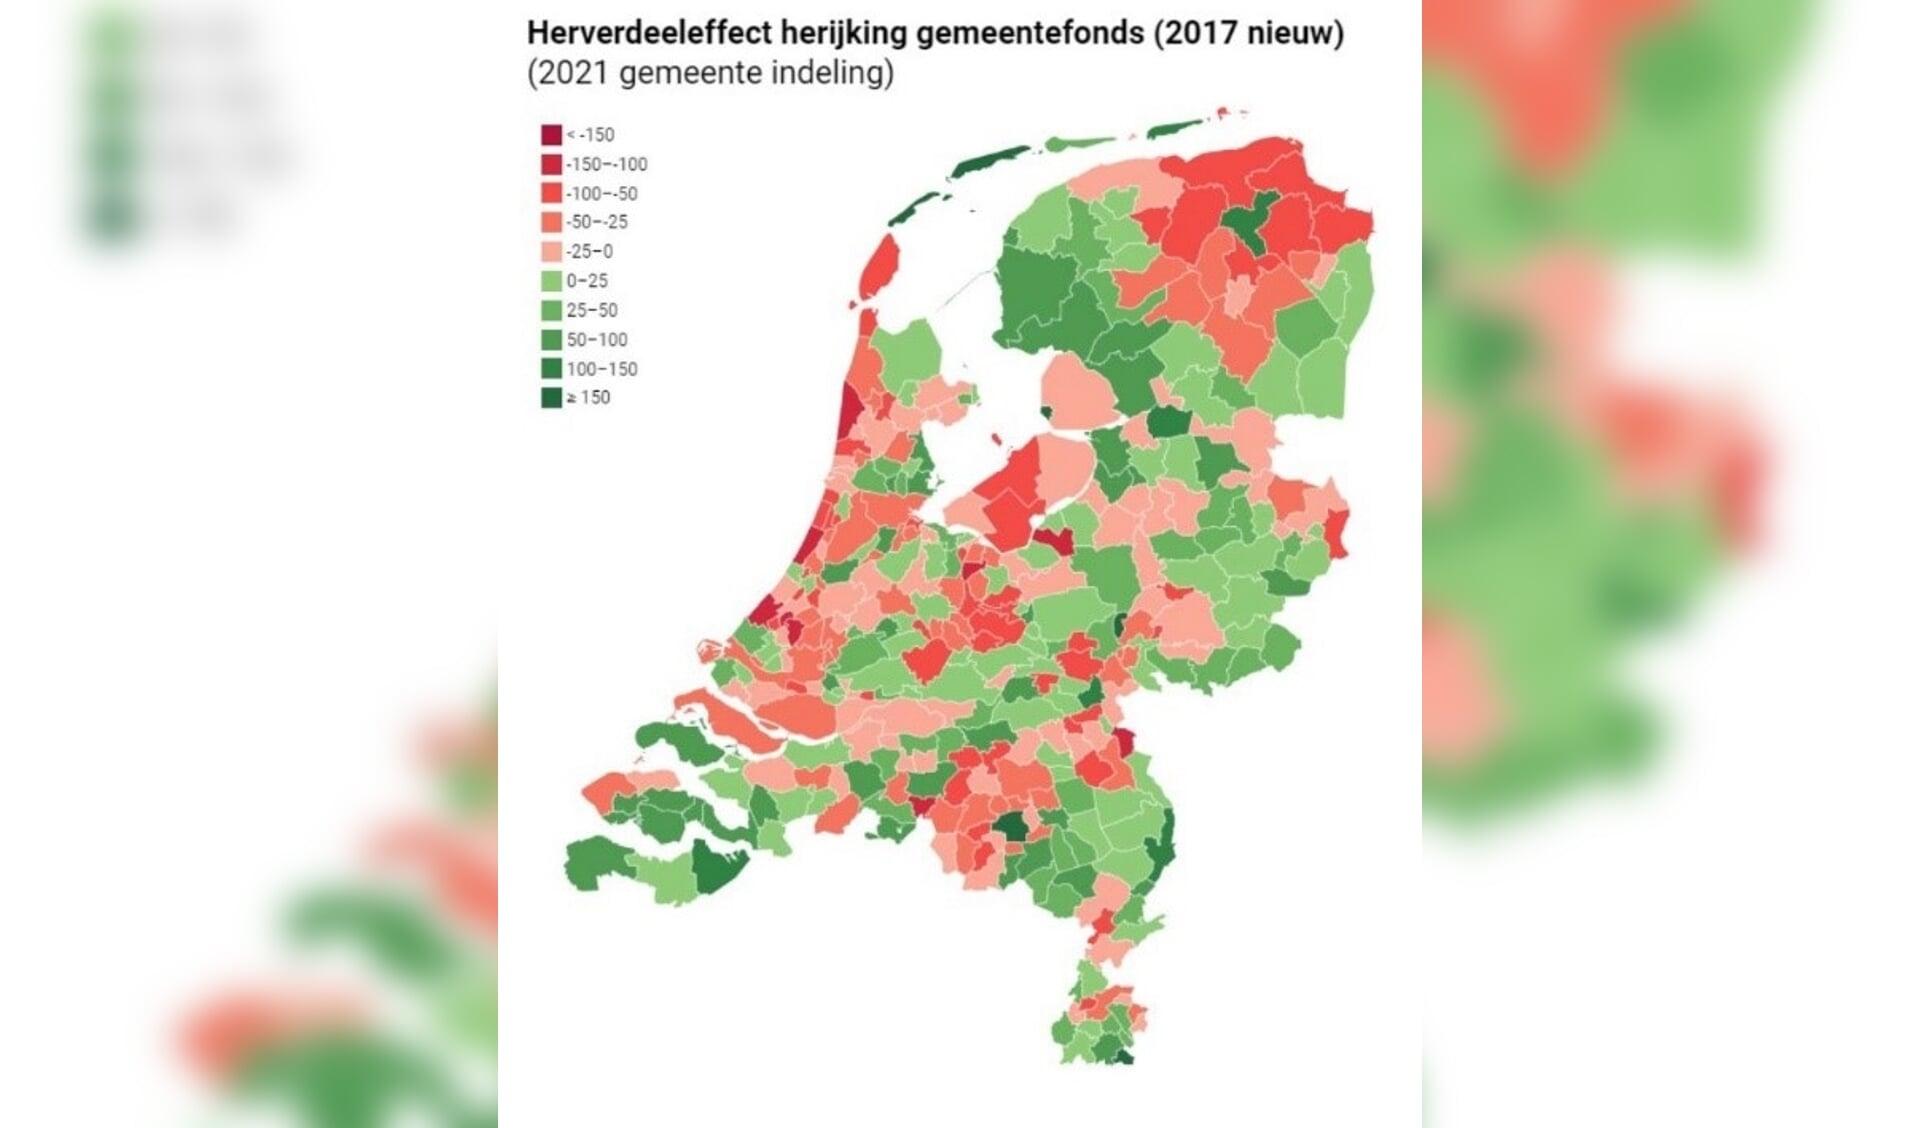 Diverse Friese en Groningse gemeenten kleuren in het nieuwe voorstel nog roze of rood.